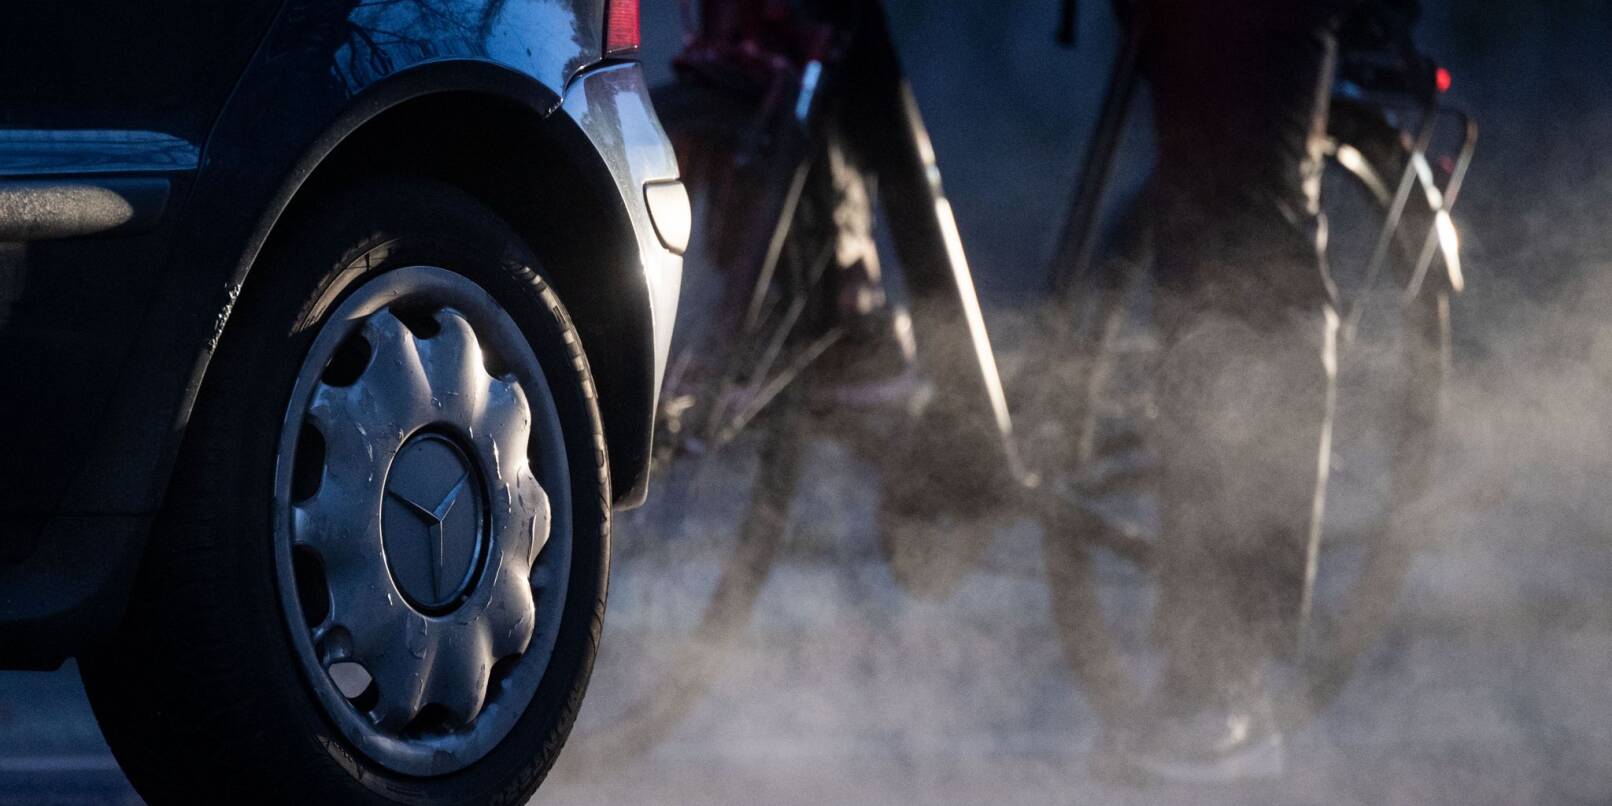 Ein Radfahrer steht neben einem Auto von Mercedes mit Dieselantrieb, dessen Abgase in der kalten Morgenluft sichtbar werden.